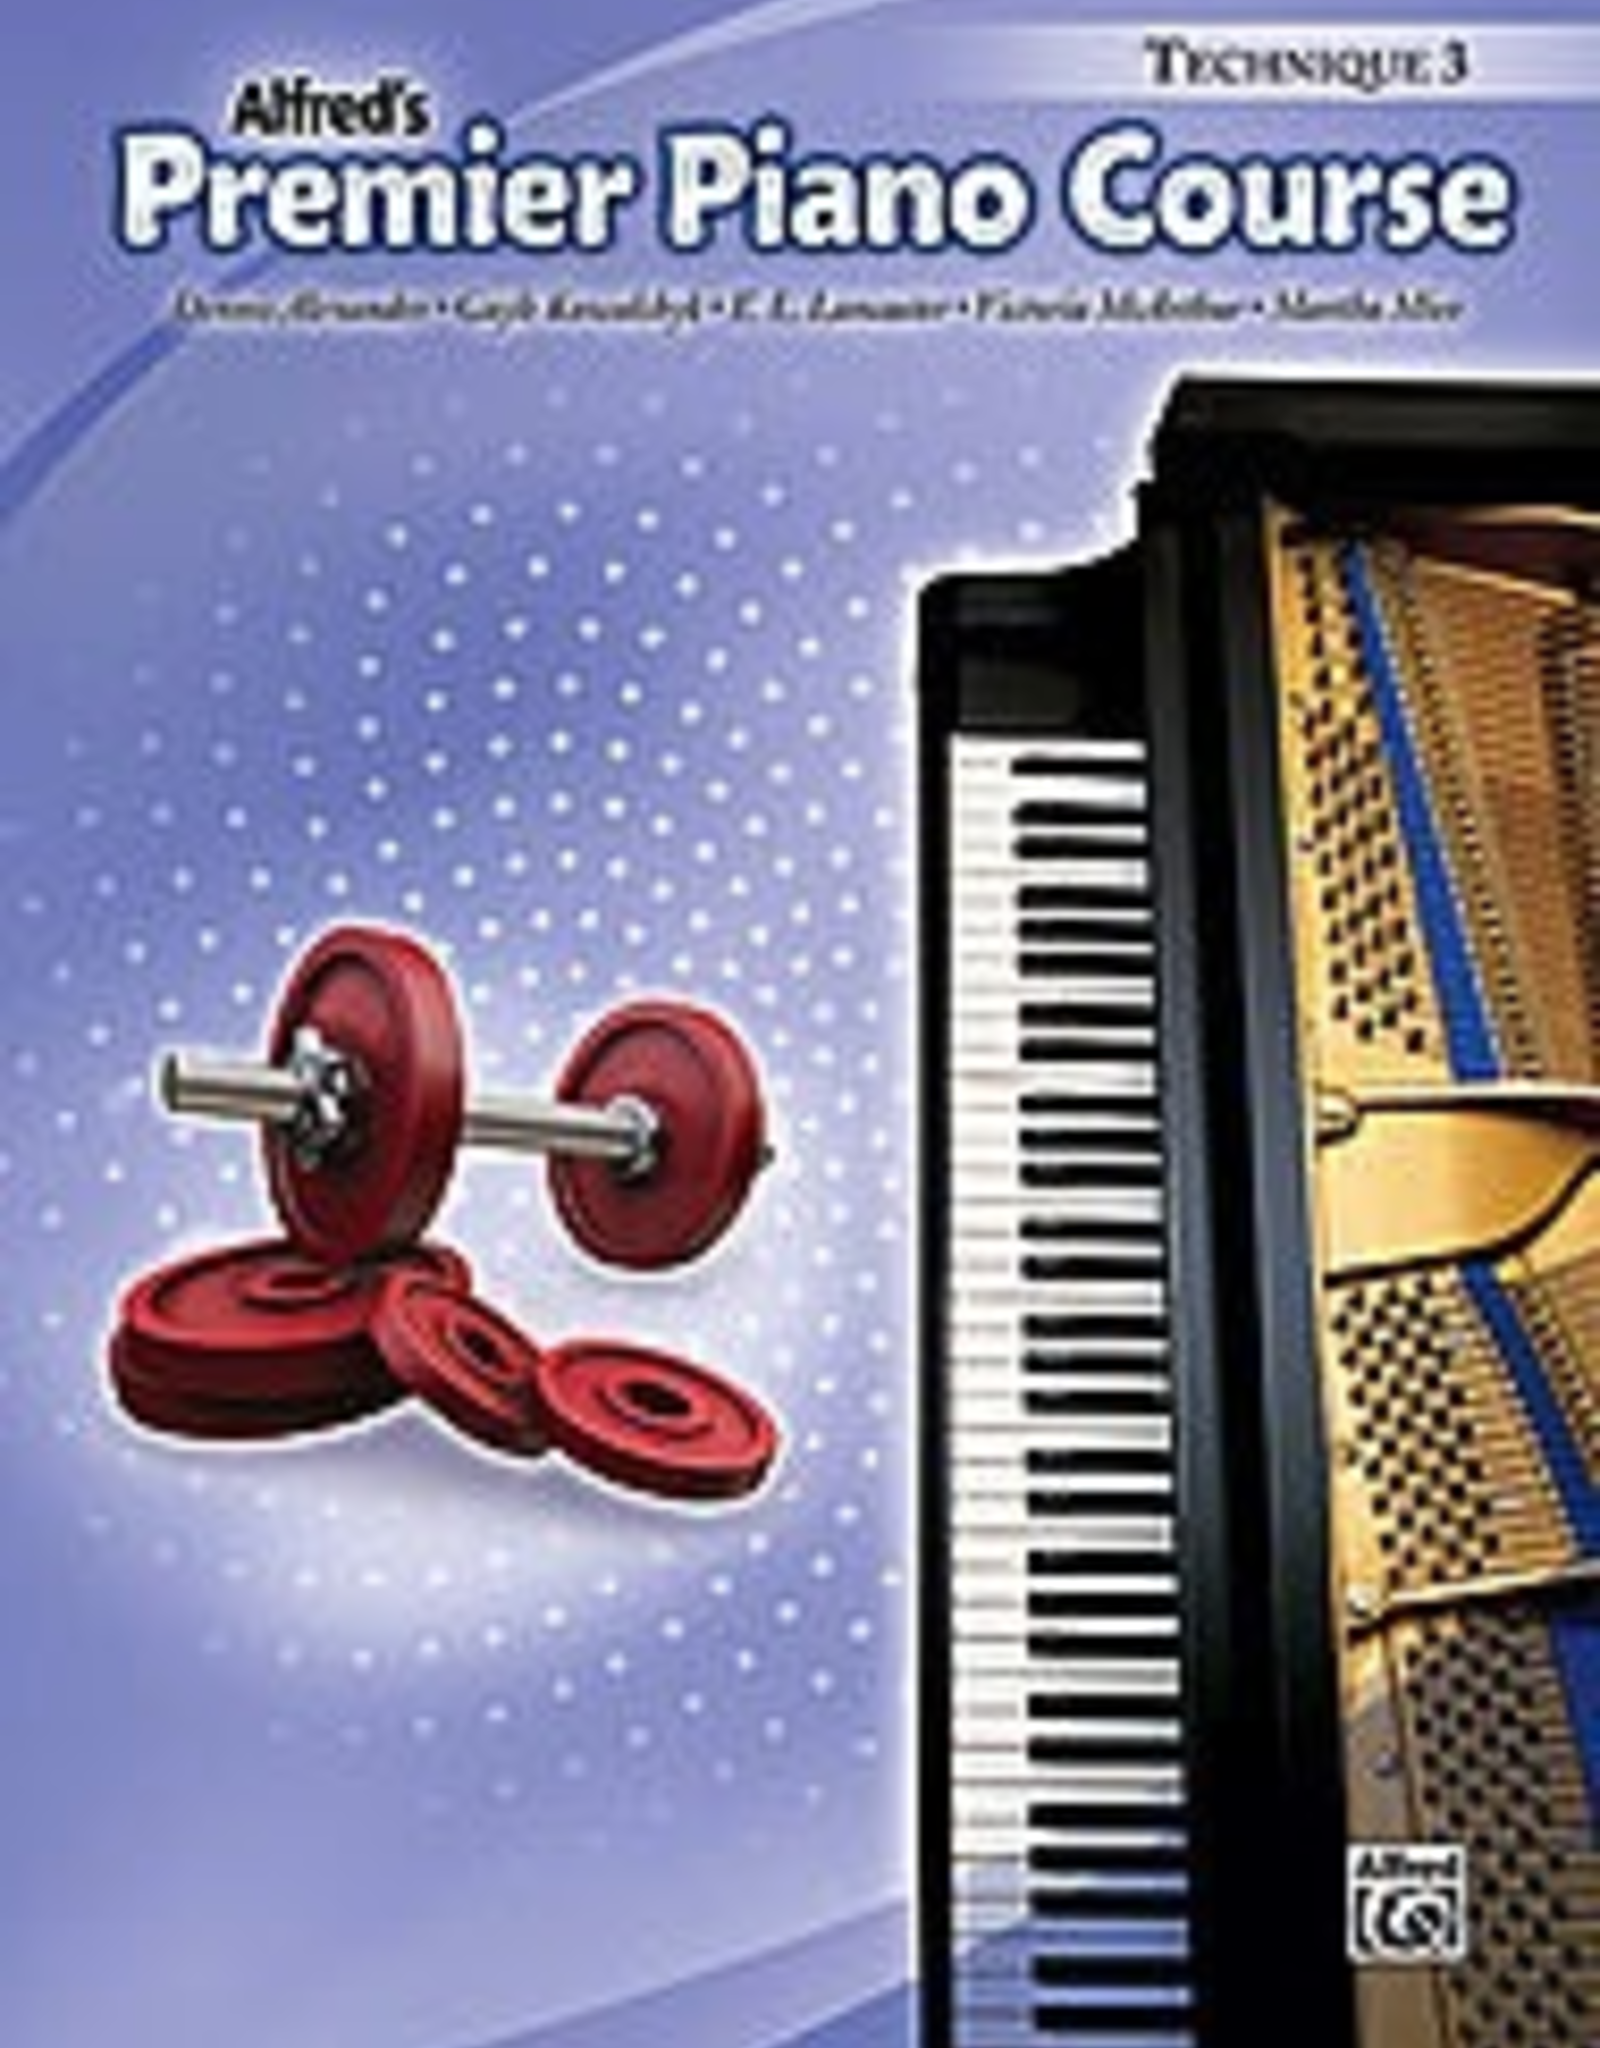 Alfred Alfred's Premier Piano Course Technique Book 3